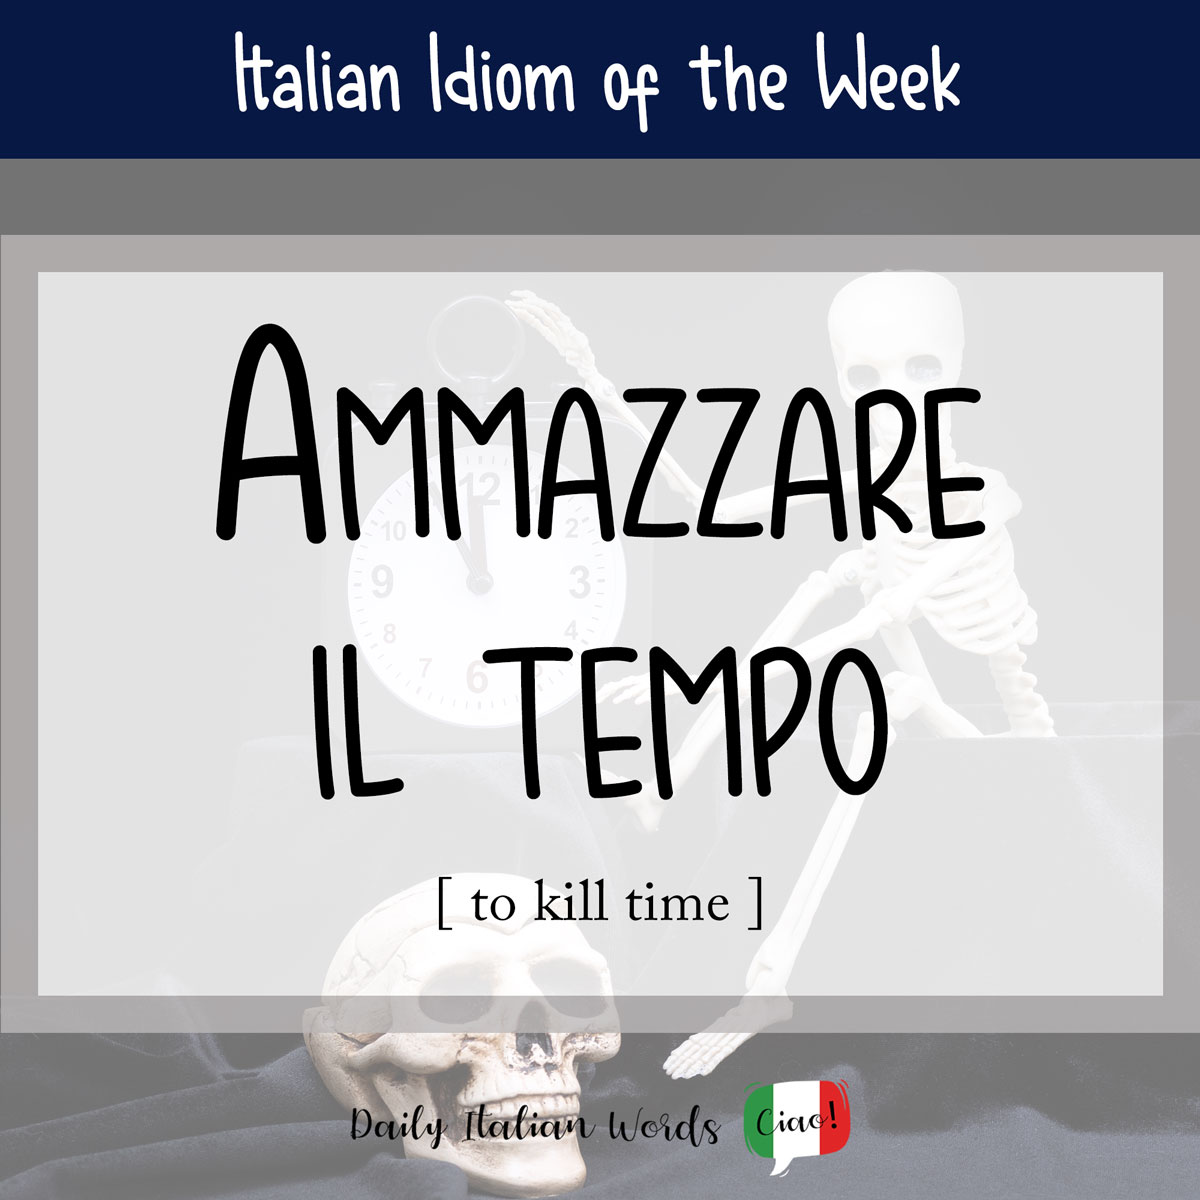 Italian idiom "ammazzare il tempo"